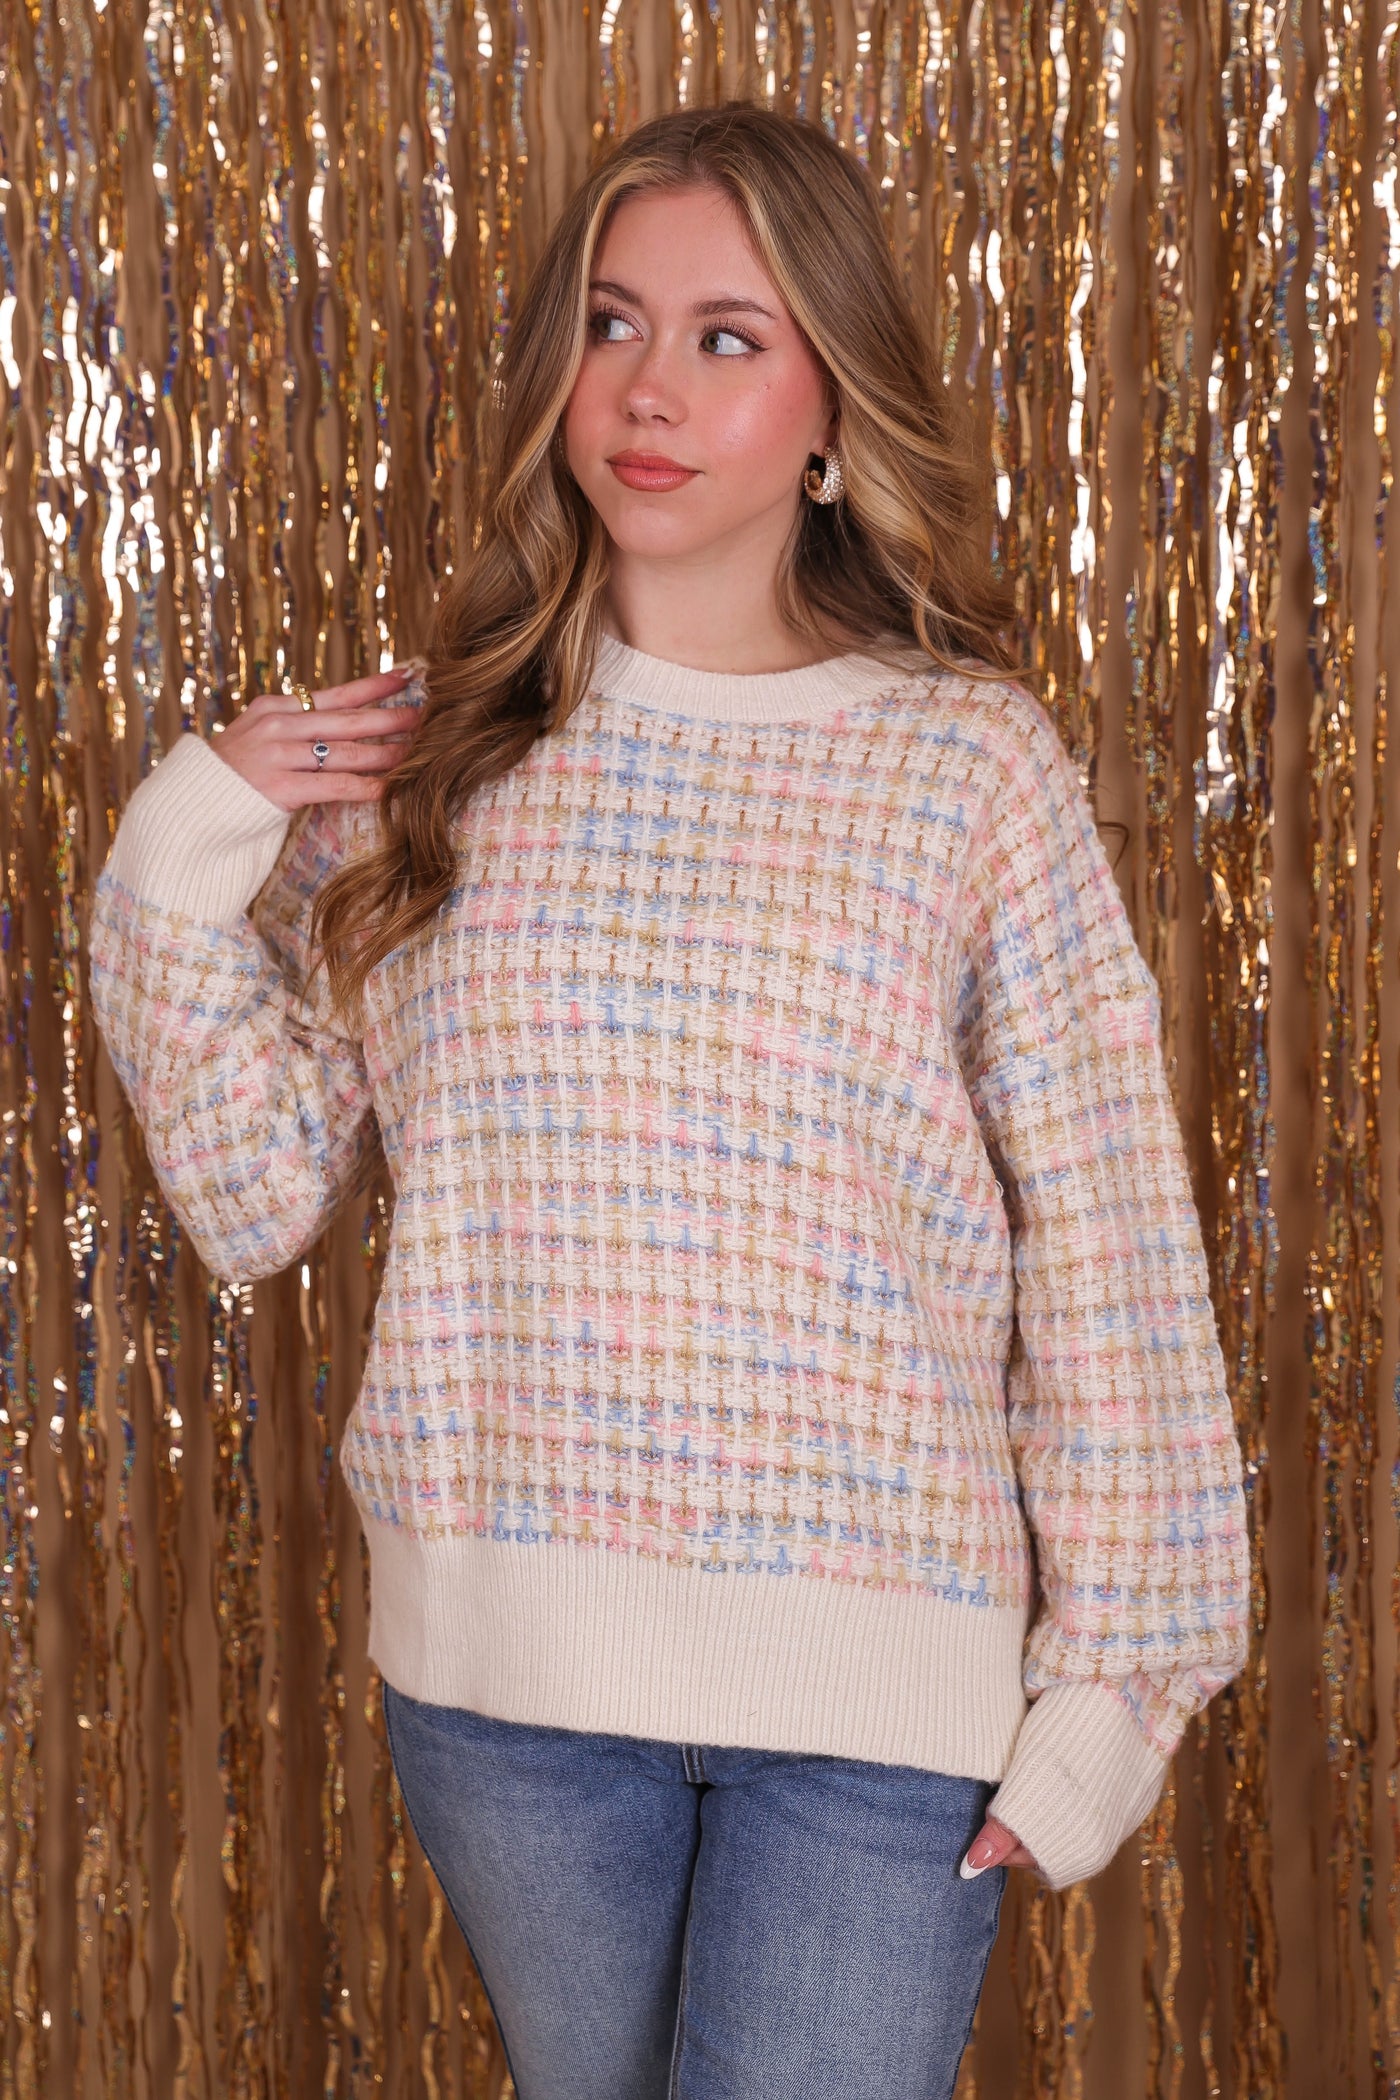 Women's Pastel Tweed Sweater- Women's Chic Tweed Sweater